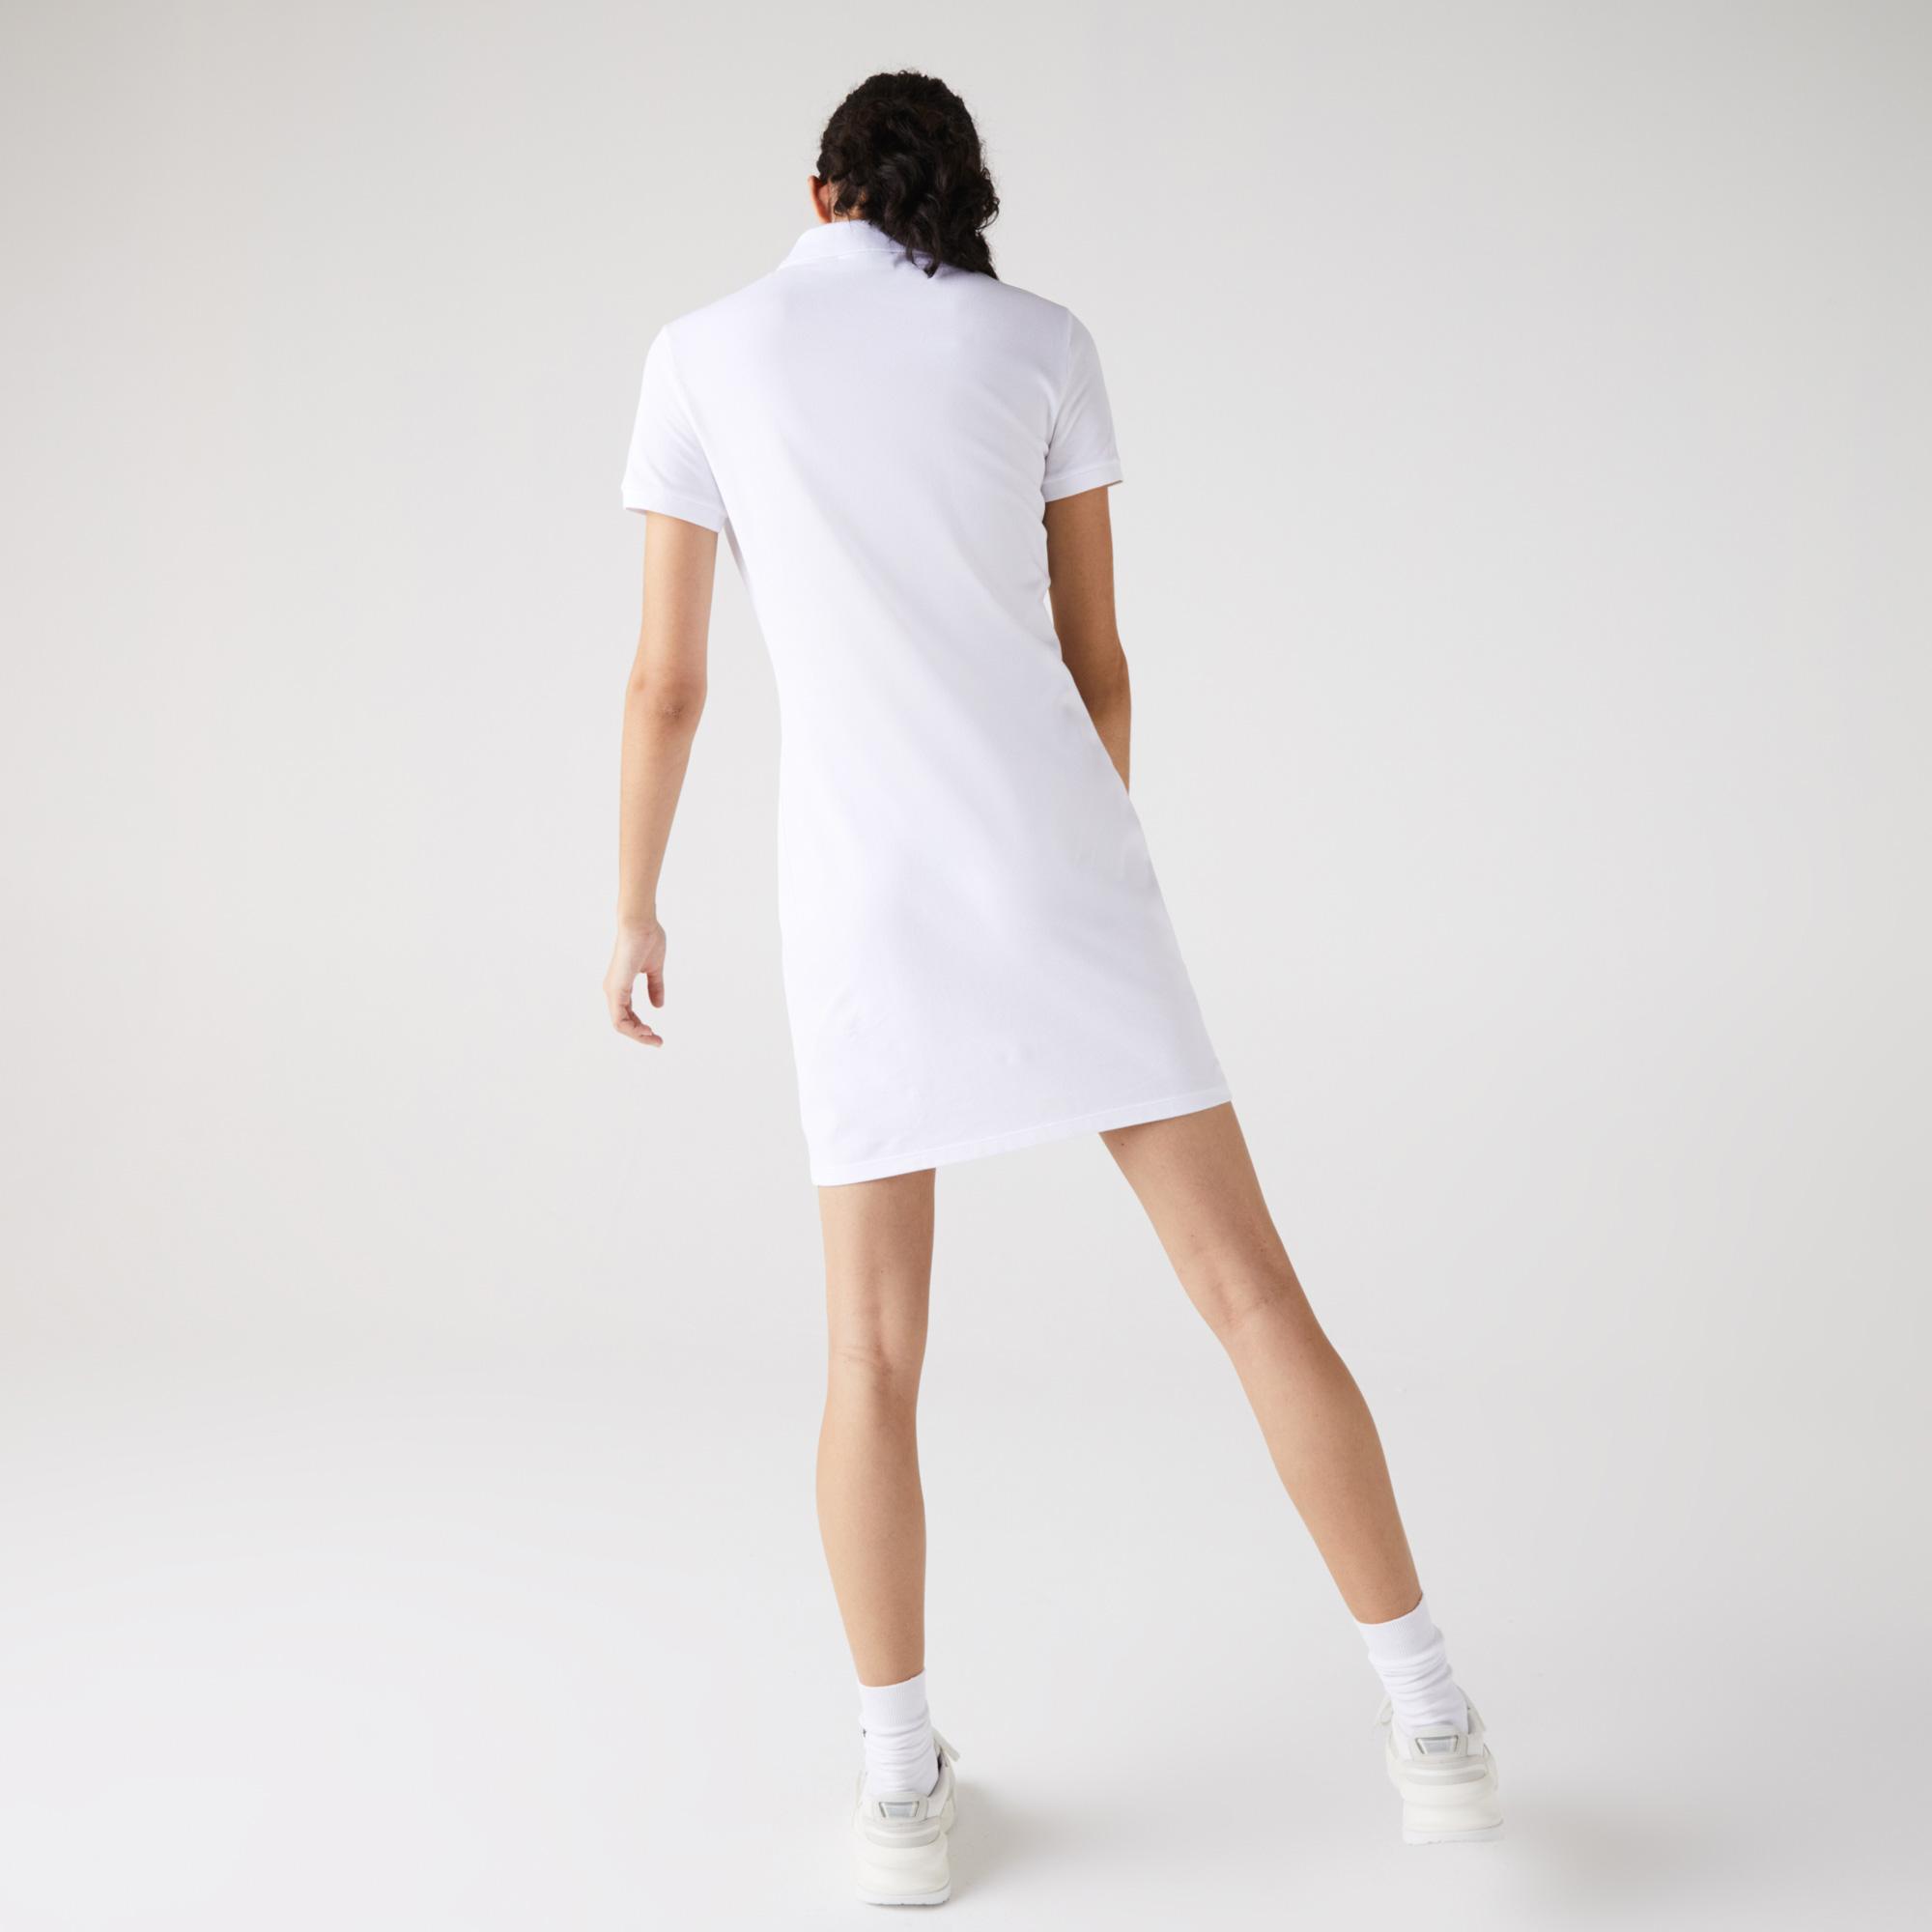 Lacoste Kadın Slim Fit Kısa Kollu Polo Yaka Beyaz Elbise. 6